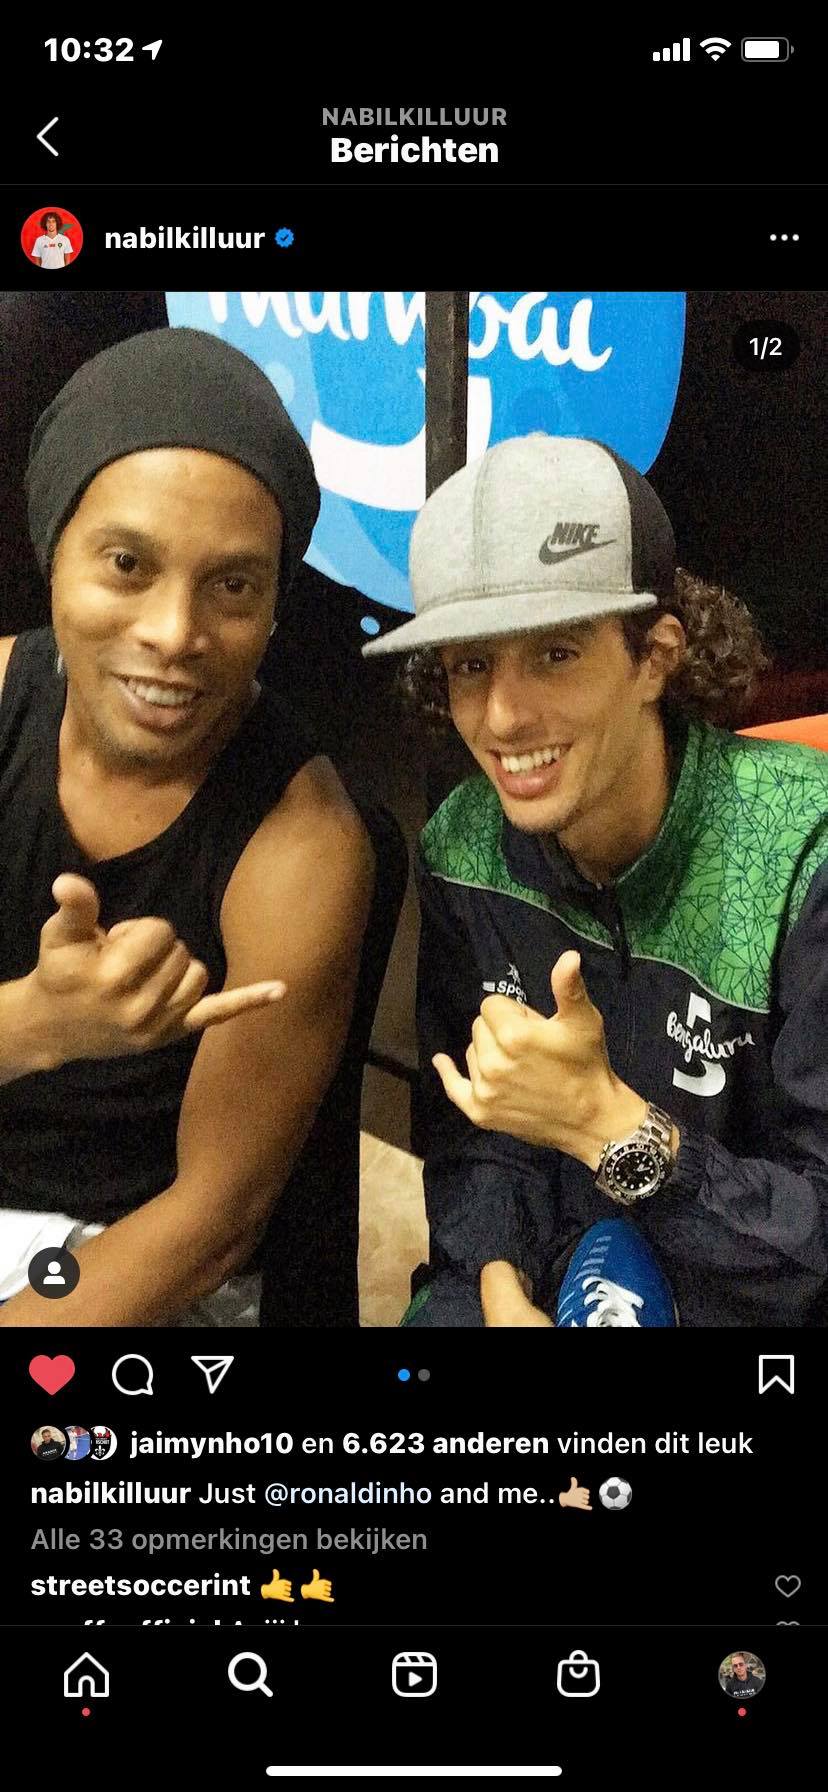 Aakazoun is ook geen onbekende voor Ronaldinho